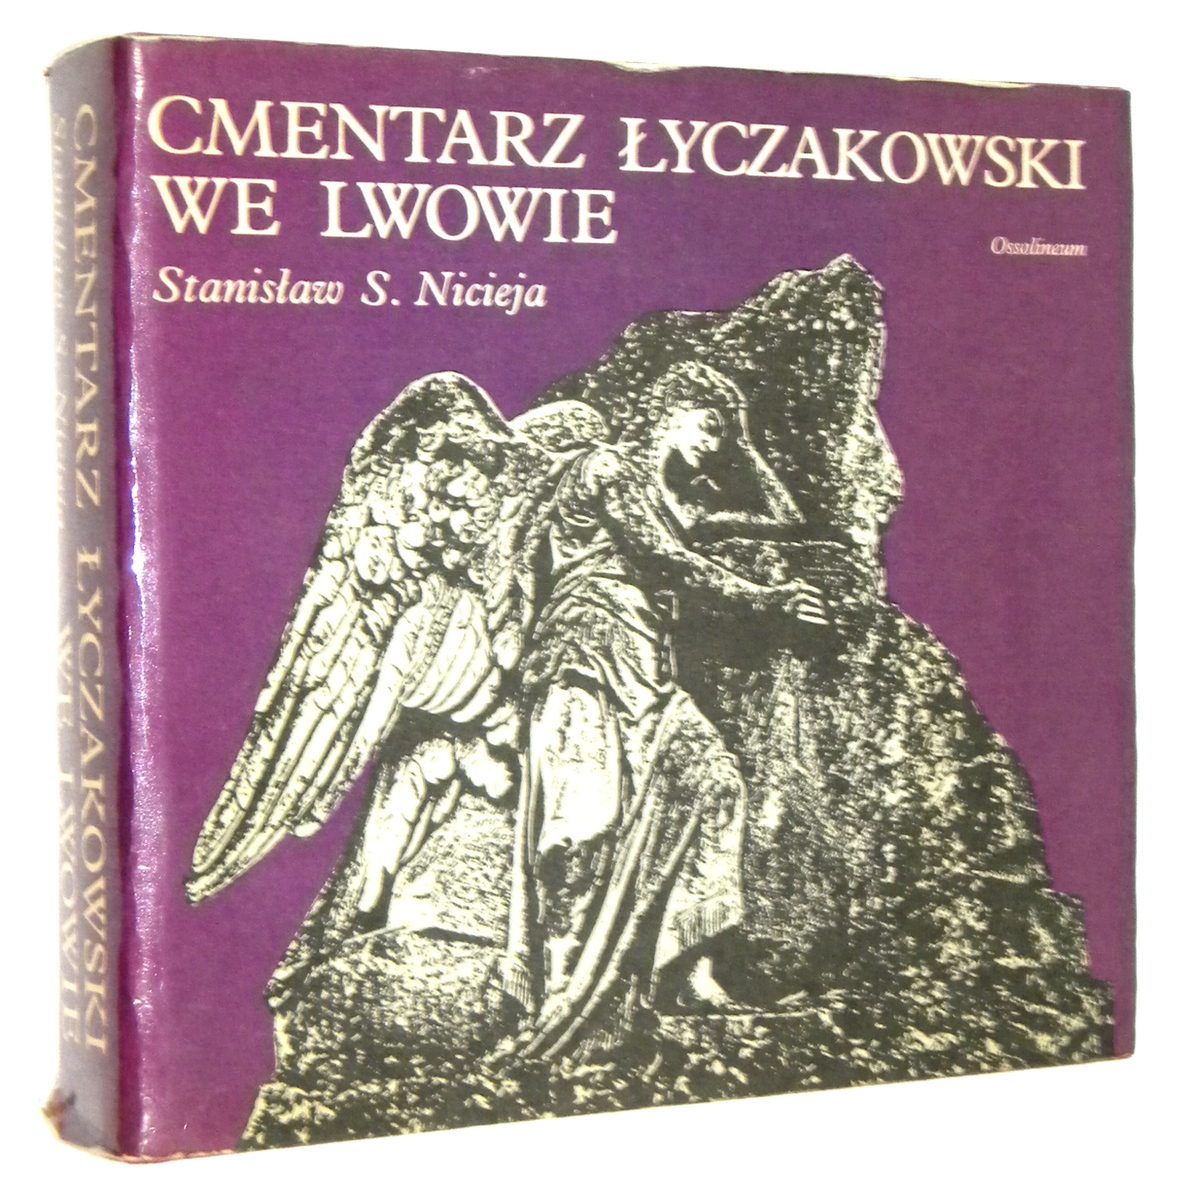 CMENTARZ YCZAKOWSKI WE LWOWIE w latach 1786-1986 - Nicieja, Stanisaw S.